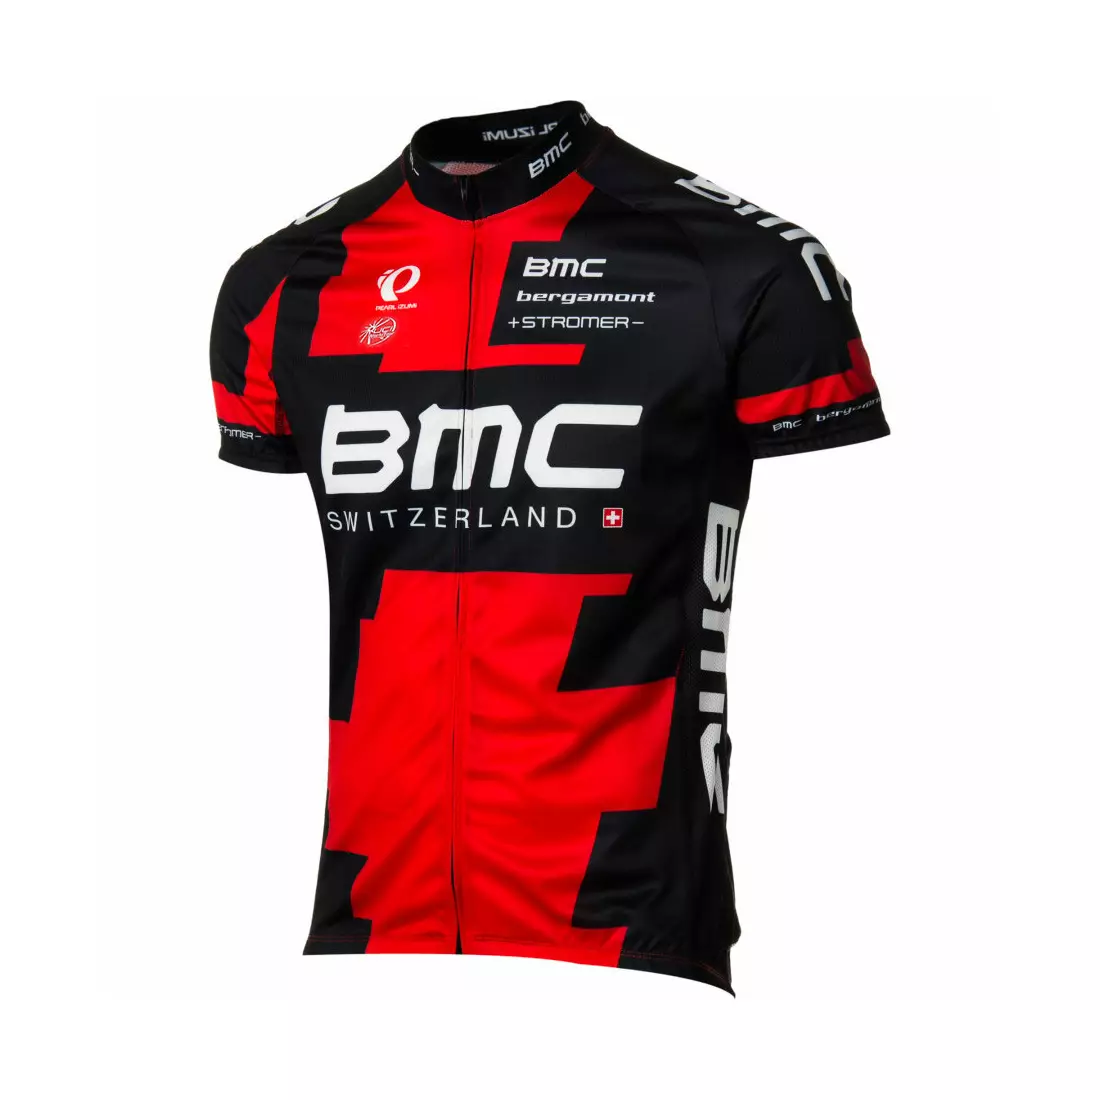 PEARL IZUMI PRO BMC 2014 - tricou de ciclism pentru bărbați C1121327-4JZ